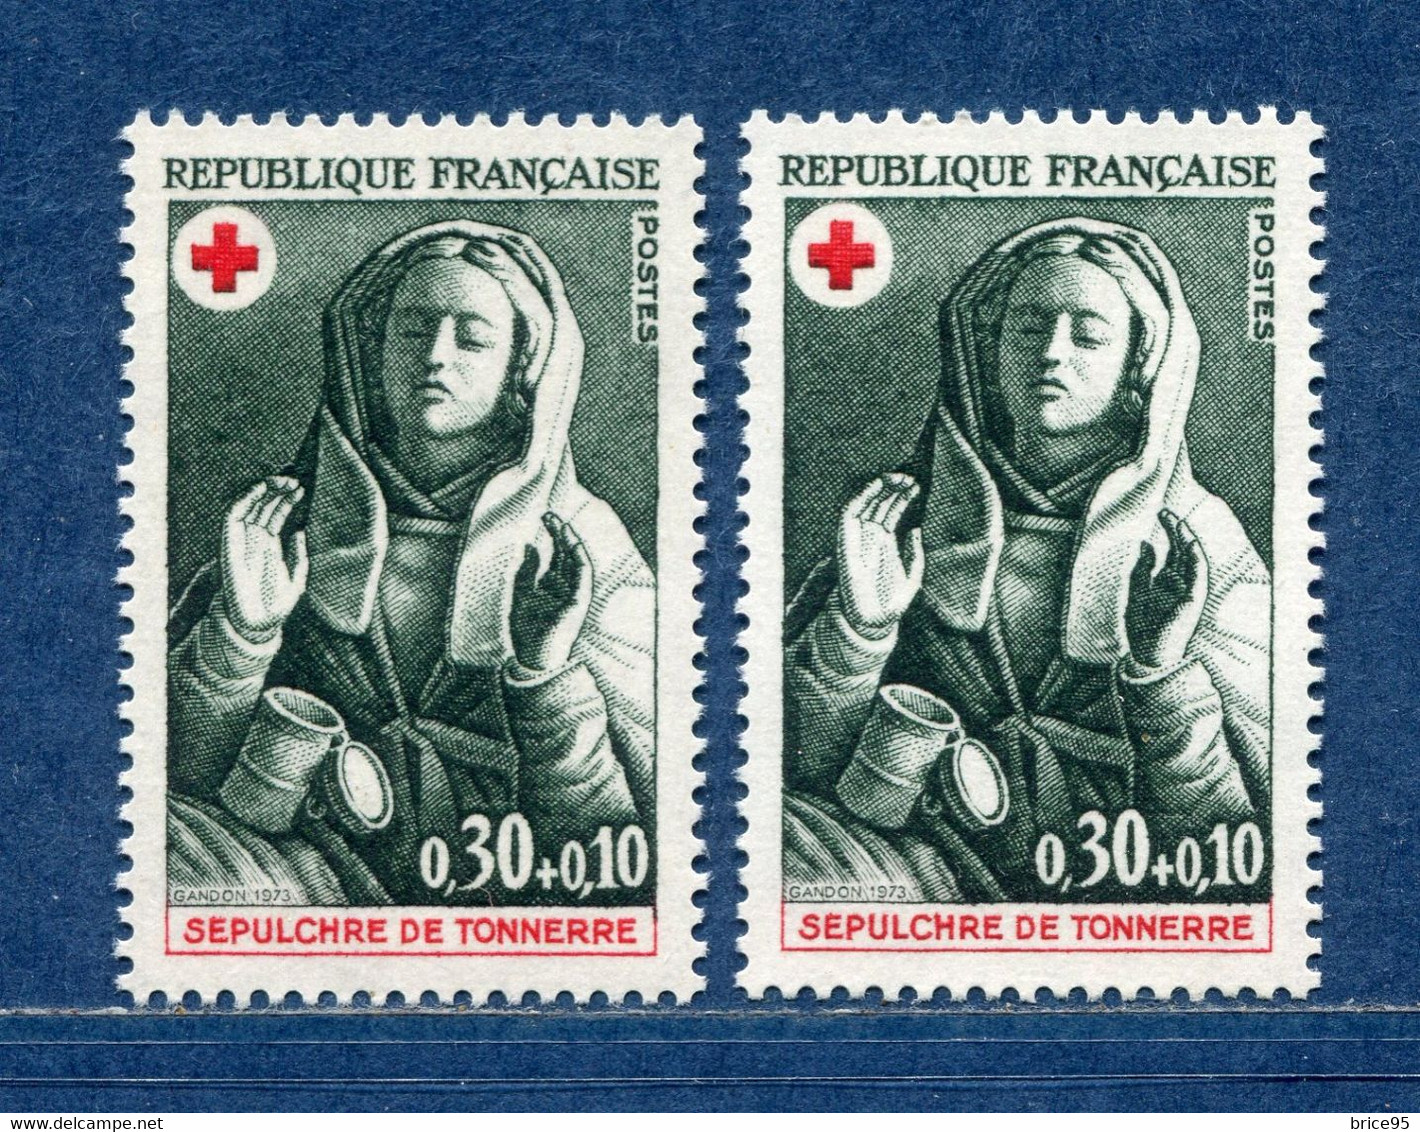 ⭐ France - Variété - YT N° 1779 - Couleurs - Pétouilles - Neuf Sans Charnière - 1973 ⭐ - Unused Stamps